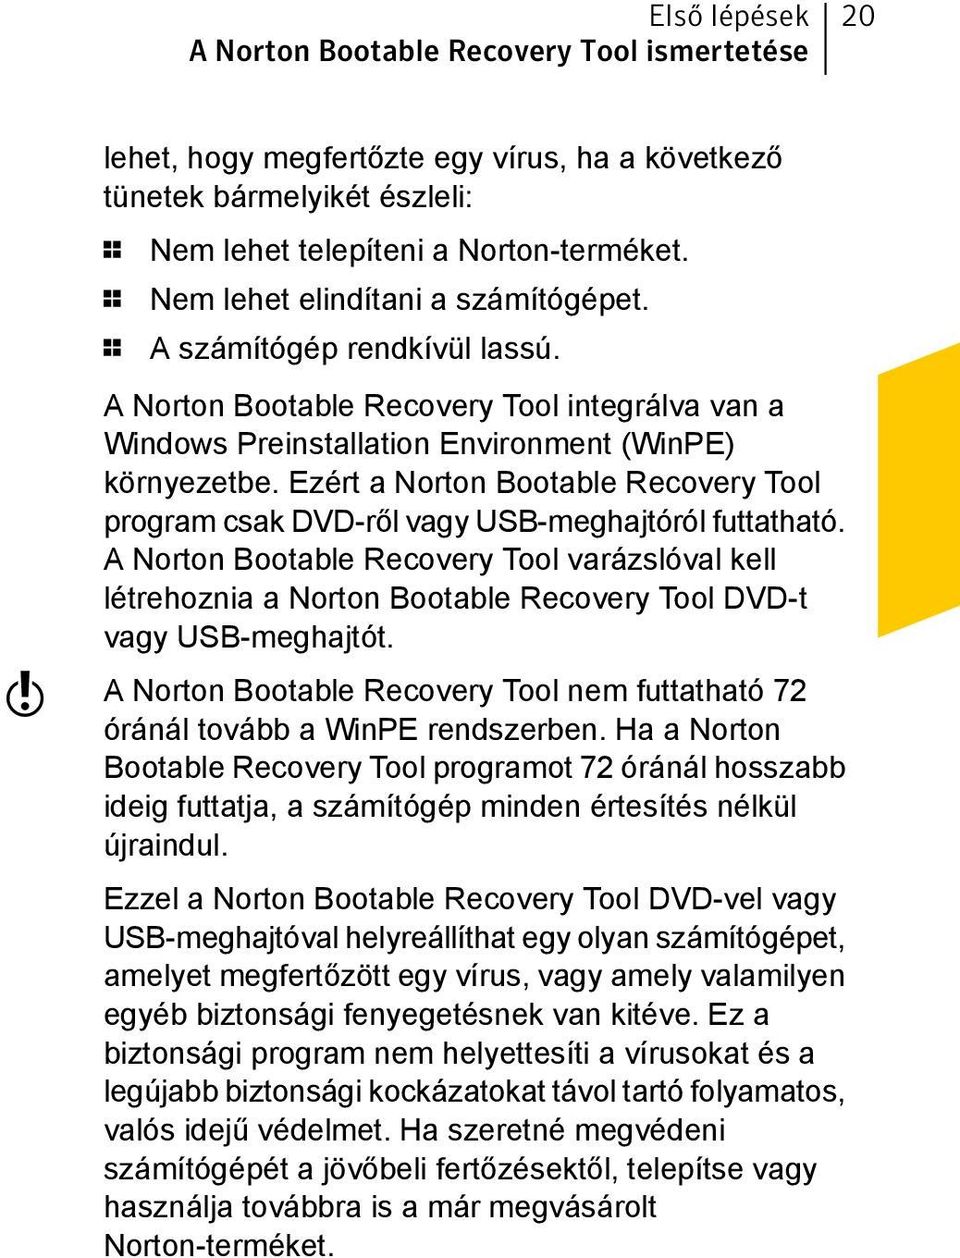 Ezért a Norton Bootable Recovery Tool program csak DVD-ről vagy USB-meghajtóról futtatható.